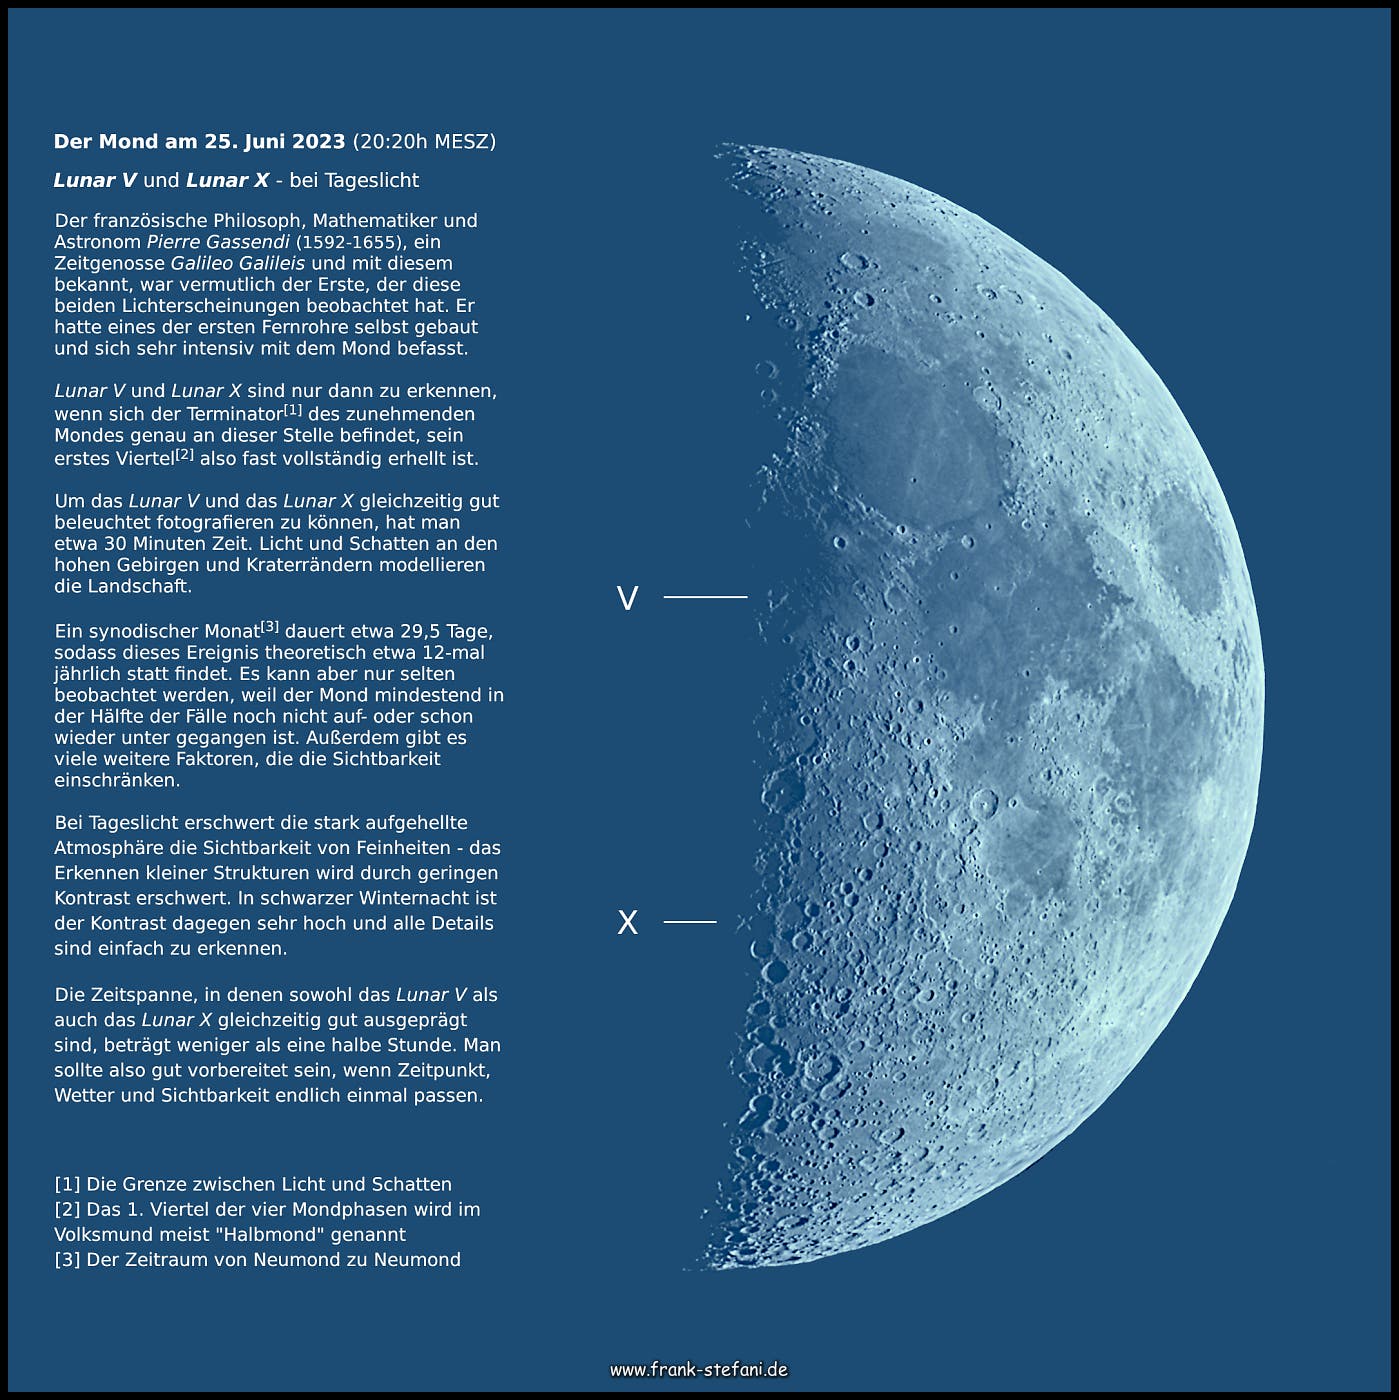 Mond am 25. Juni 2023 - Lunar V und Lunar X